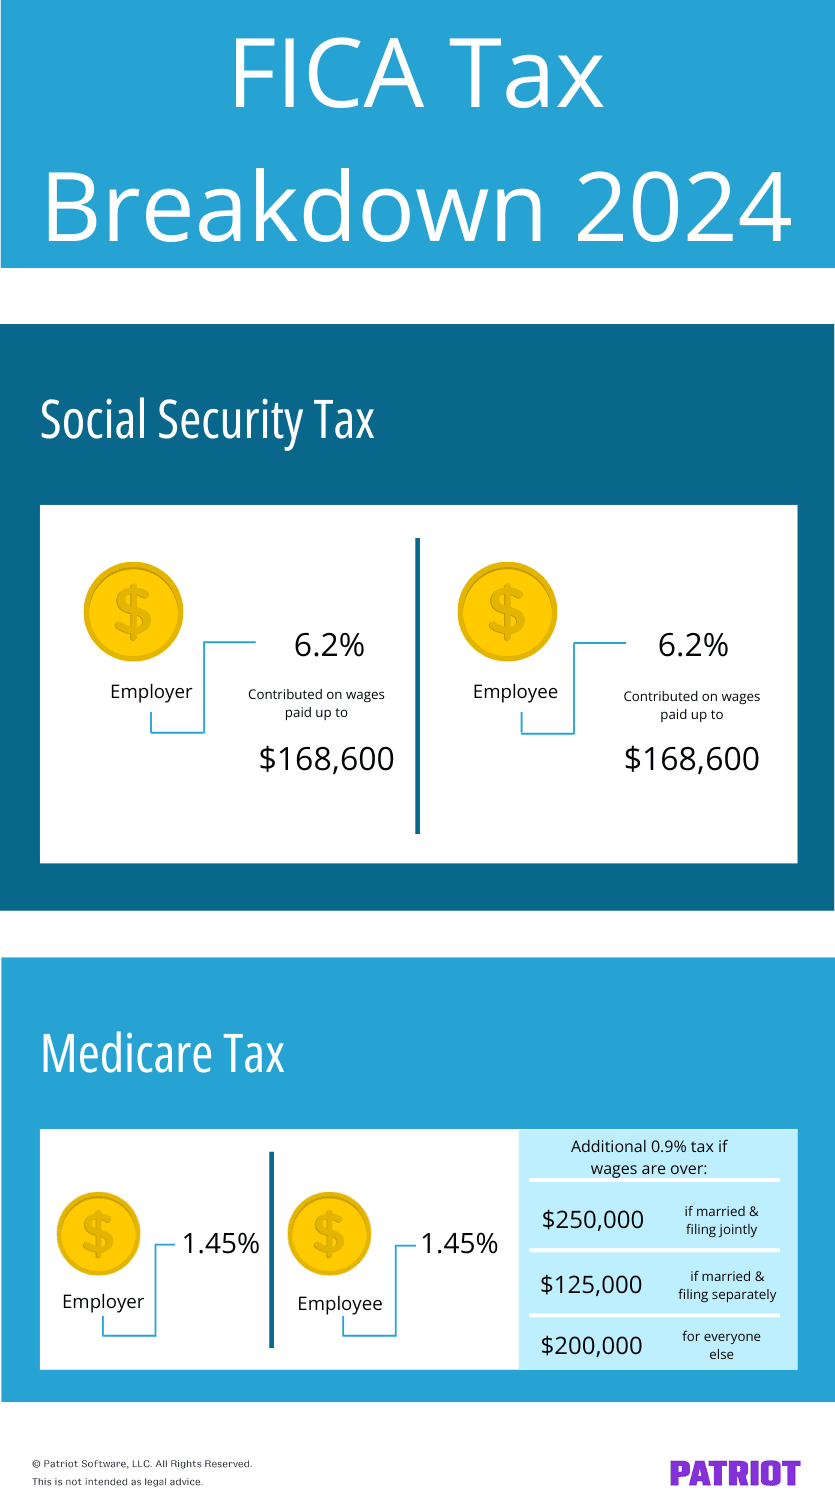 Repartição de impostos FICA 2024: A Previdência Social é de 6,2% (empregador) e 6,2% (empregado) sobre salários pagos até $ 168.600. O imposto Medicare é de 1,45% (empregador) e 1,45% (empregado) sobre todos os salários. Há um imposto adicional de 0,9% que os empregados pagam após um determinado valor.